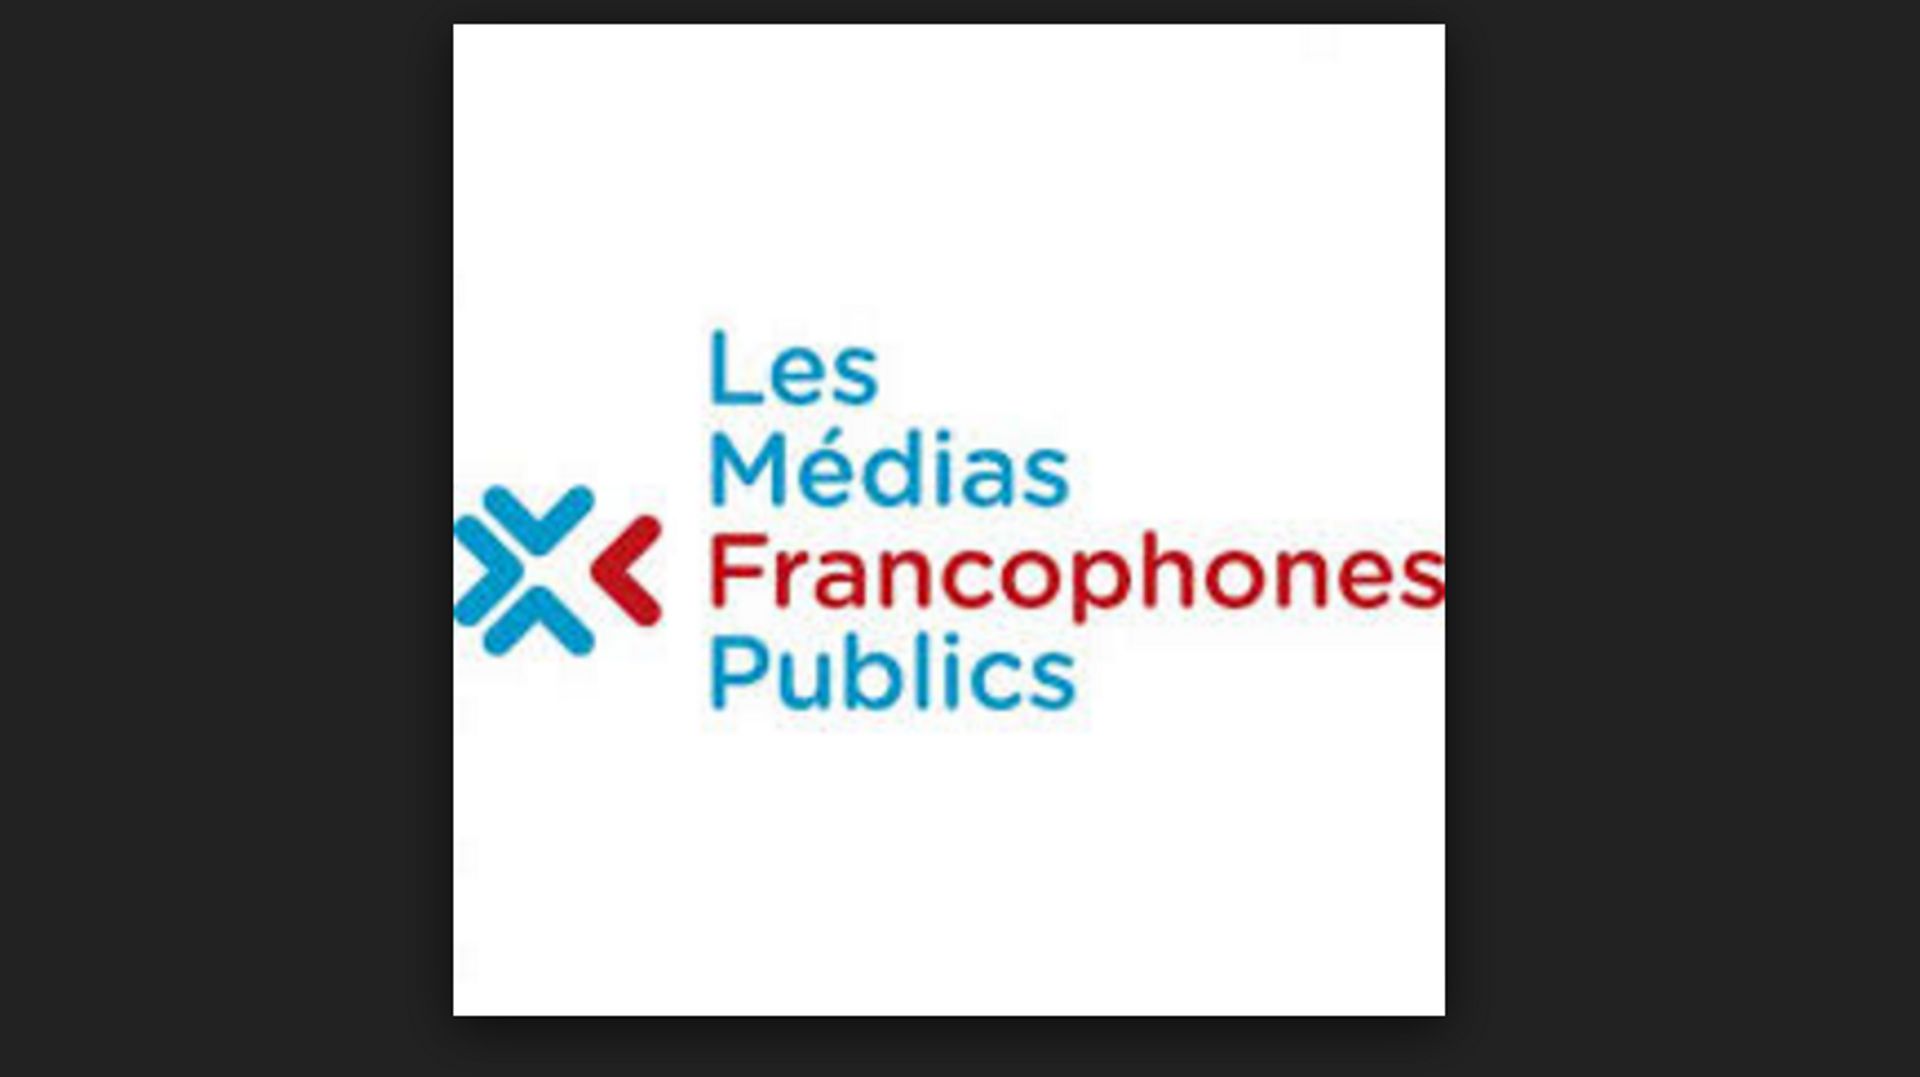 Les radios et télévisions francophones publiques s'unissent dans une nouvelle organisation